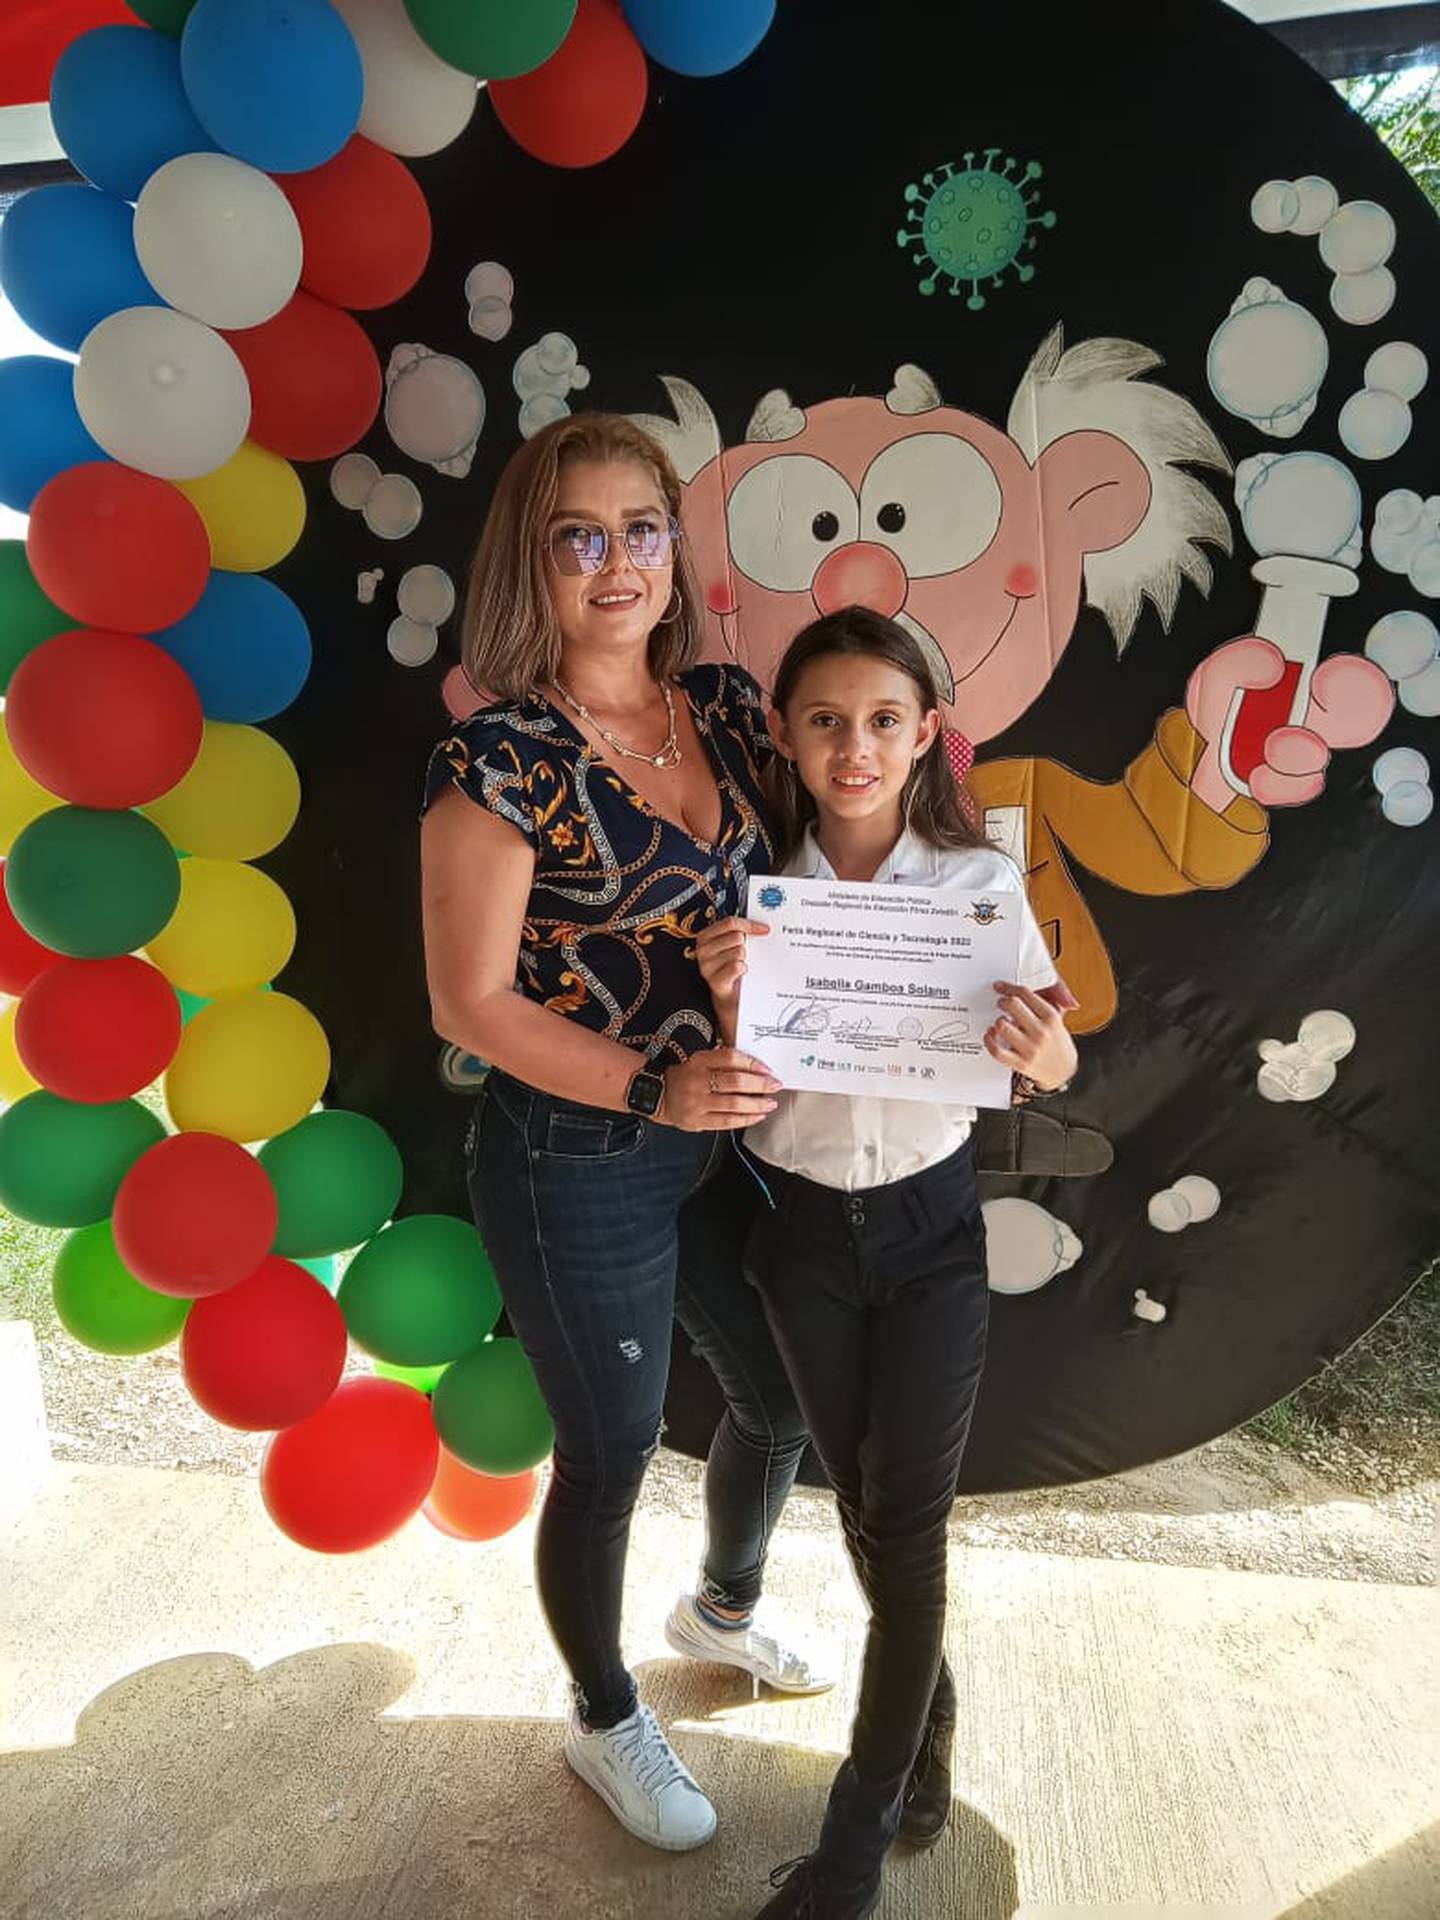 Isabella Gamboa Solano está en quinto año  de la Escuela San Jerónimo de San Pedro, en Pérez Zeledón, gana primer lugar, en la Feria Científica, por su investigación “Los vapeadores una amenaza disfrazada de sabores”.